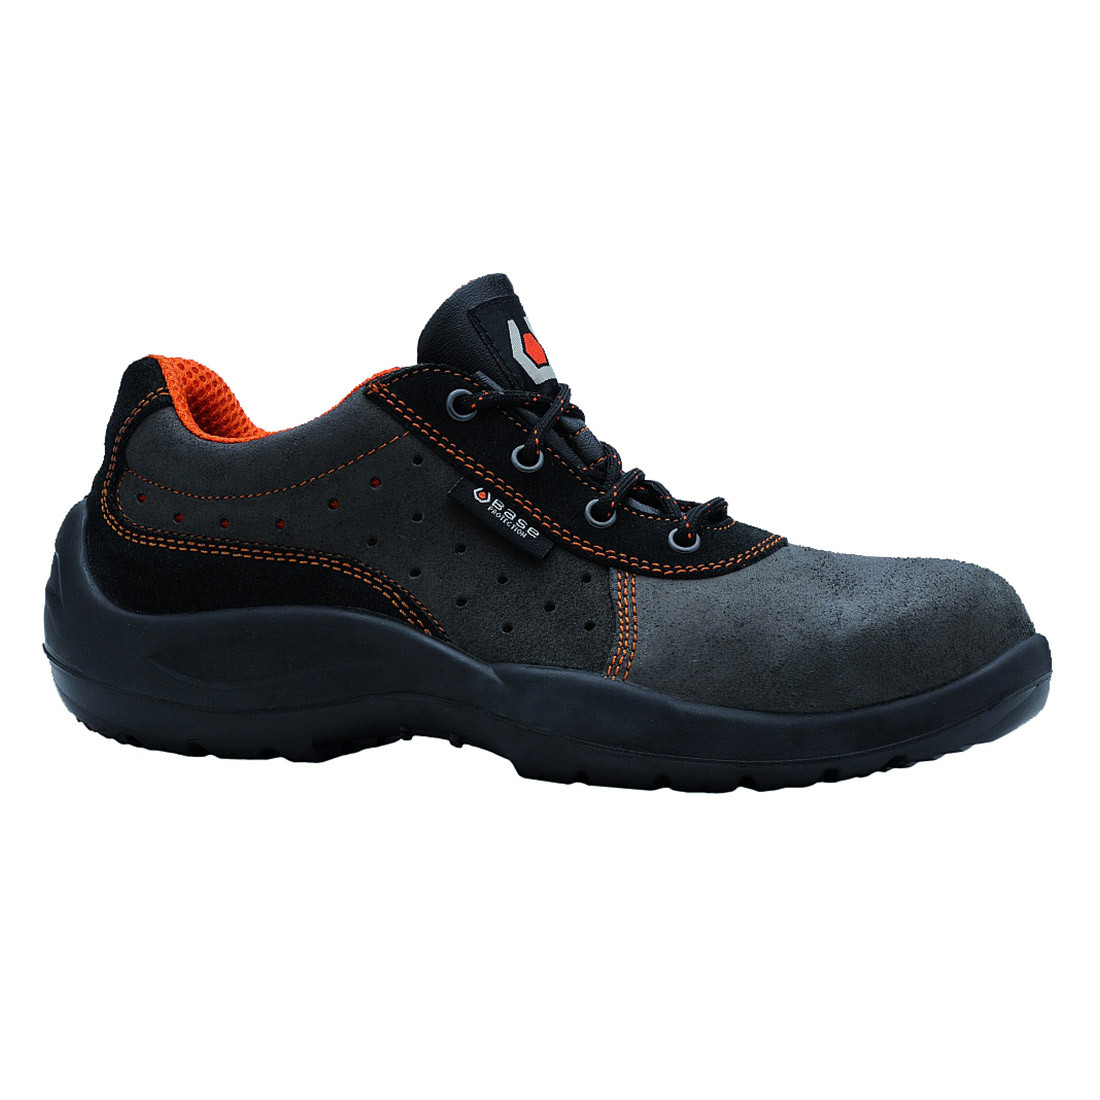 Franklin Shoe S1 SRC - Footwear